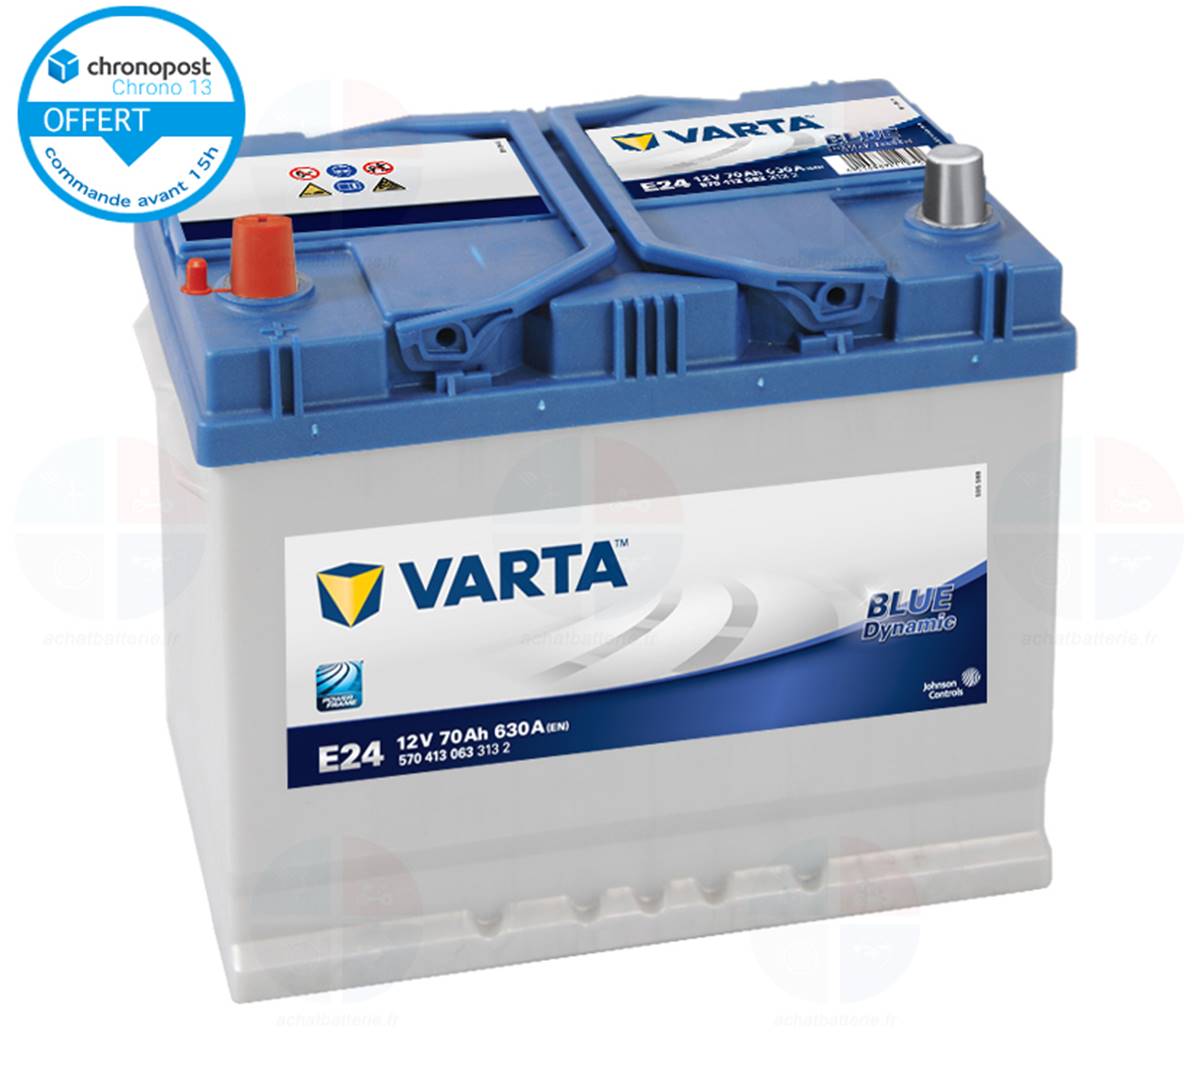 Batterie auto E24 12V 70ah/630A VARTA blue dynamic + à gauche, batterie de  démarrage VL, utilitaires